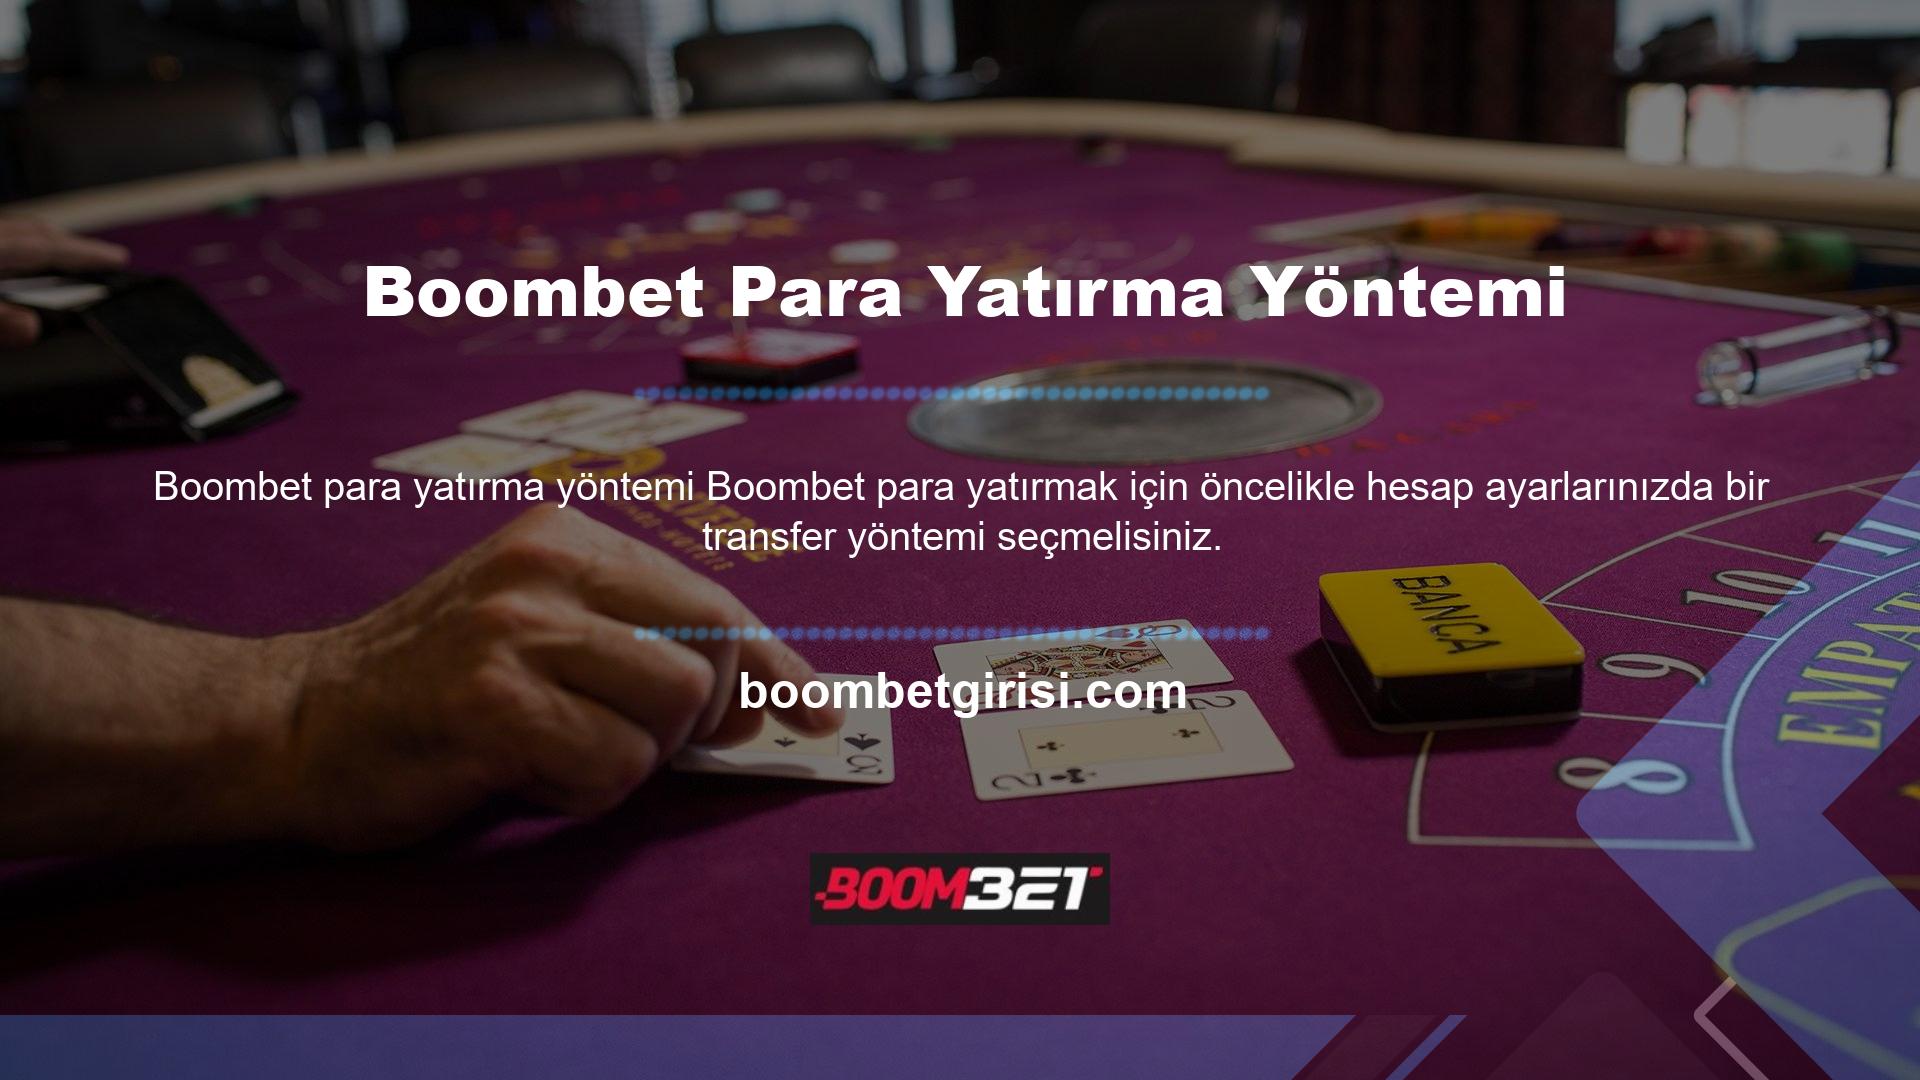 Ardından seçeceğiniz yönteme göre Boombet özel yatırım adresine gitmeniz gerekecektir